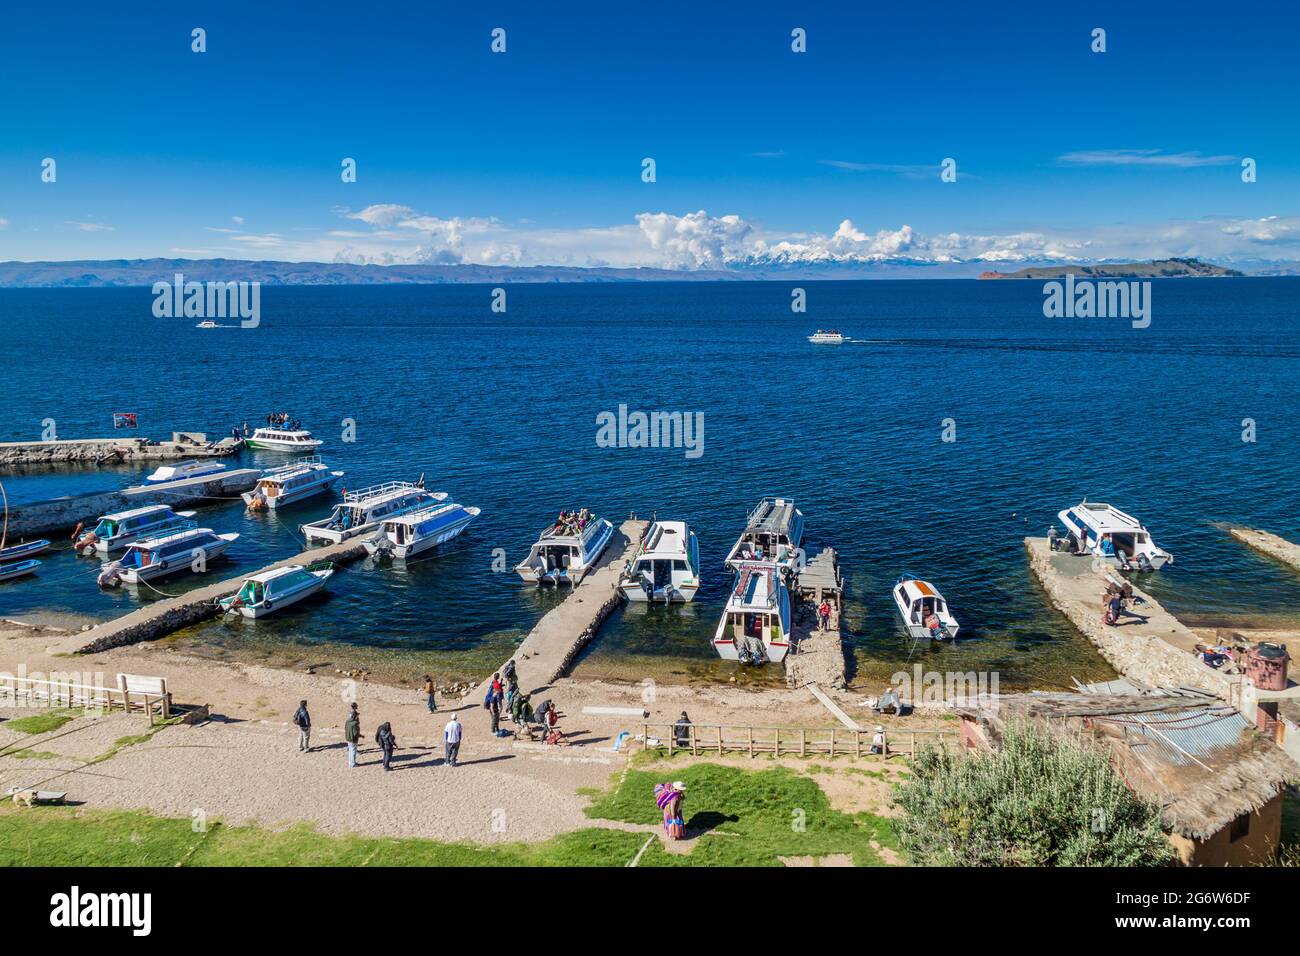 ISLA DEL Sol, BOLIVIA - 12 MAGGIO 2015: Imbarcazioni turistiche ancorate nel villaggio di Yumani sull'Isla del Sol (Isola del Sole) nel lago Titicaca, Bolivia Foto Stock